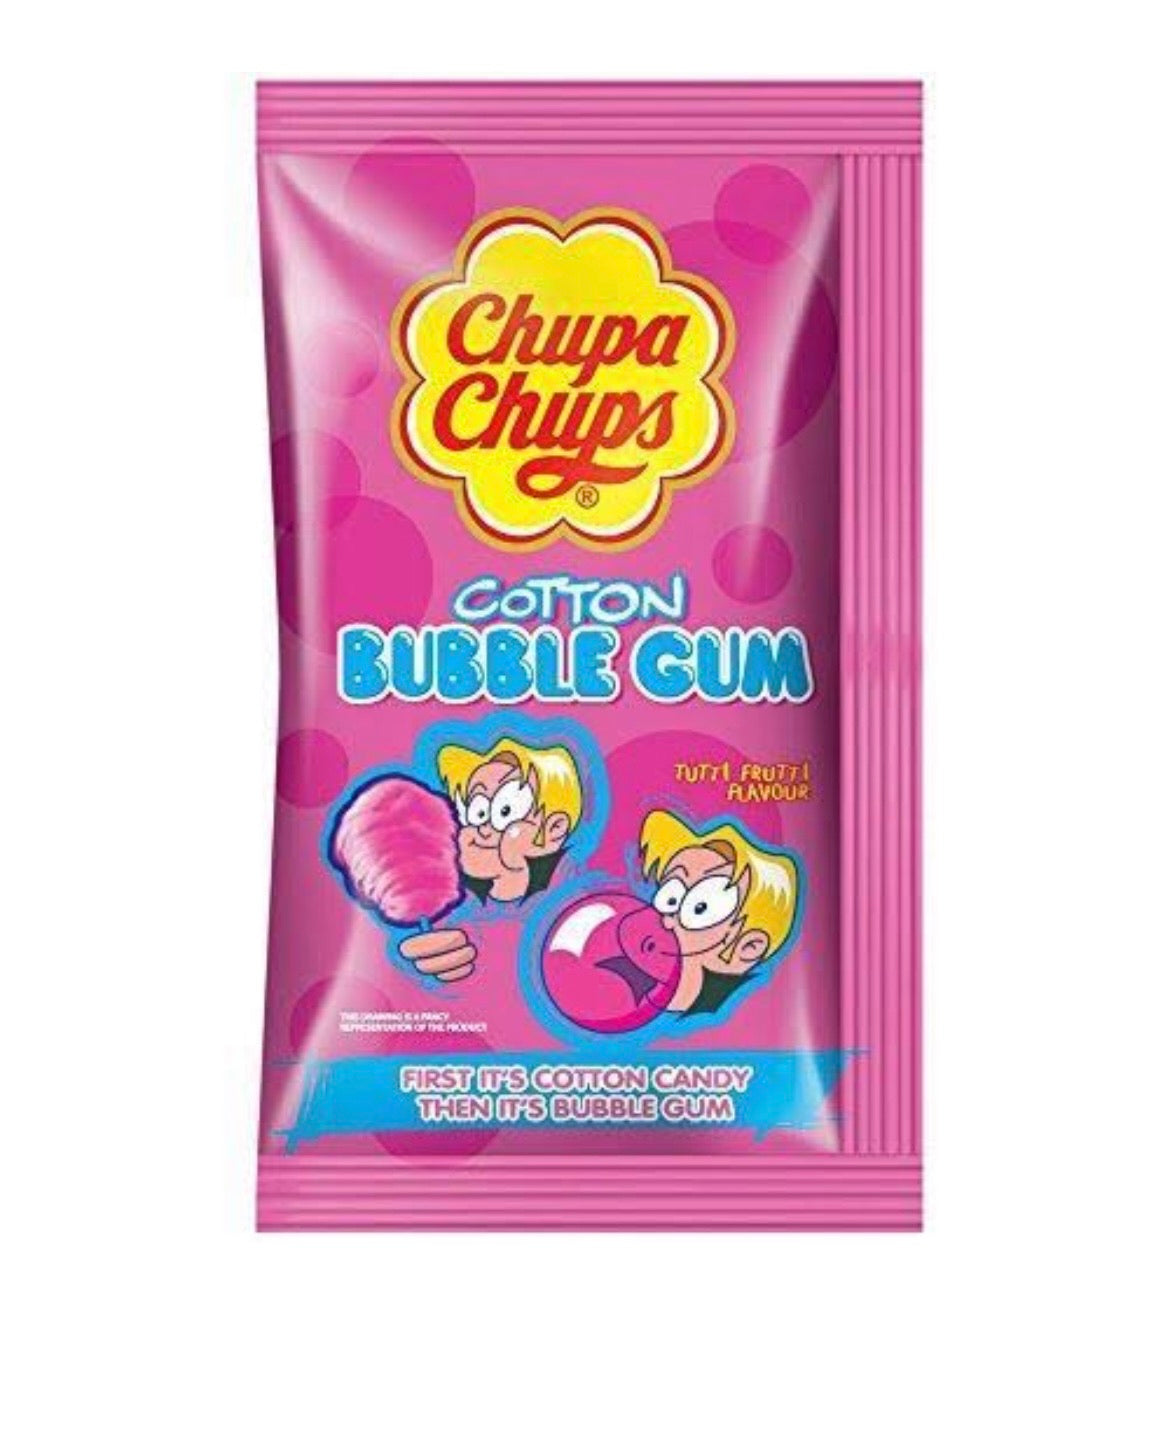 Chupa chups cotton candy gum